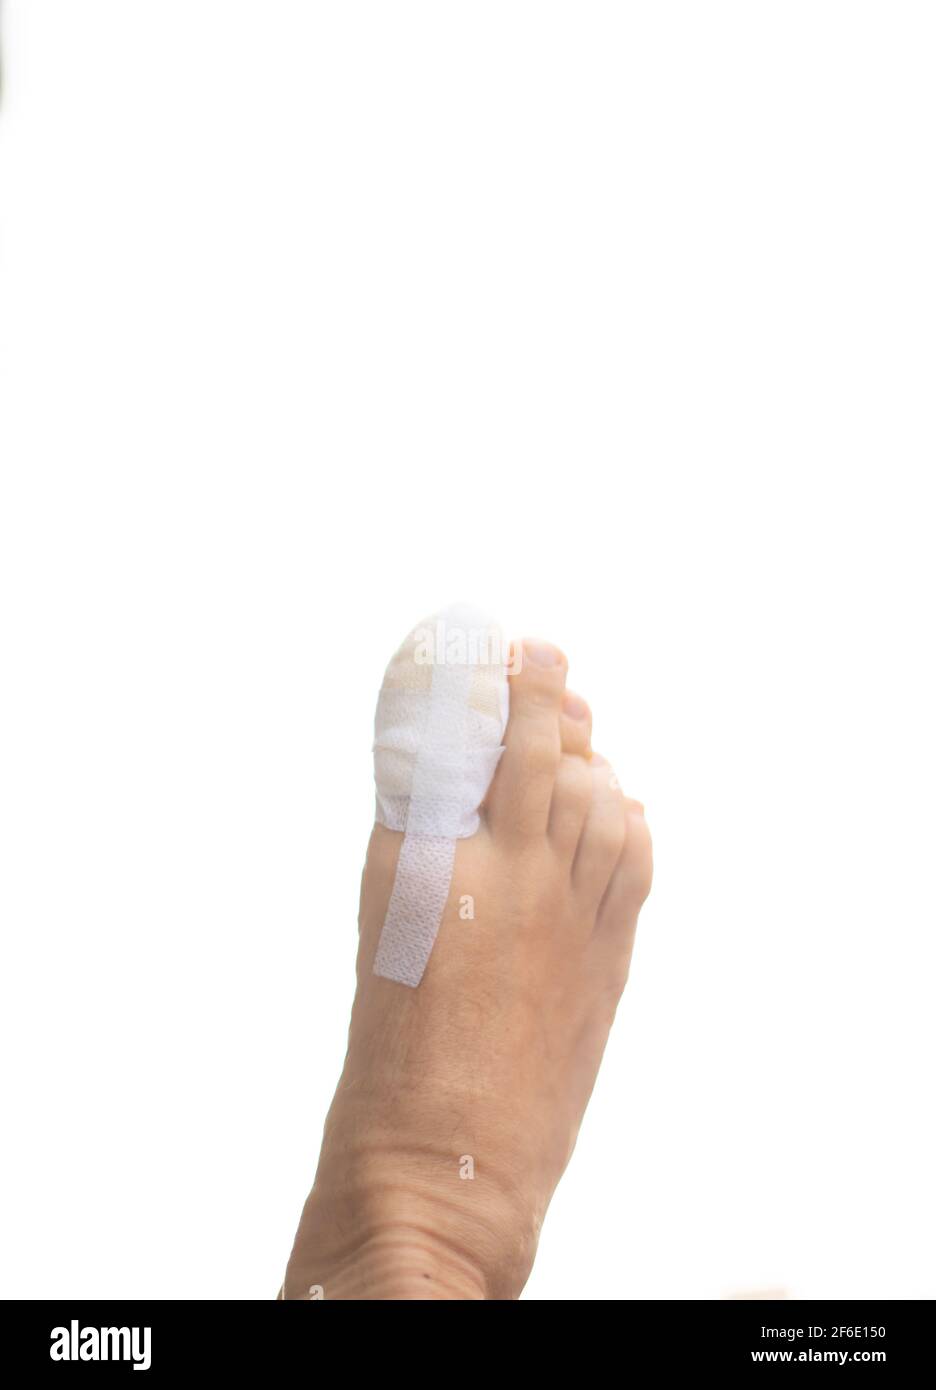 Fuß große Zehe Bandage verletzte Füße in der medizinischen Klinik